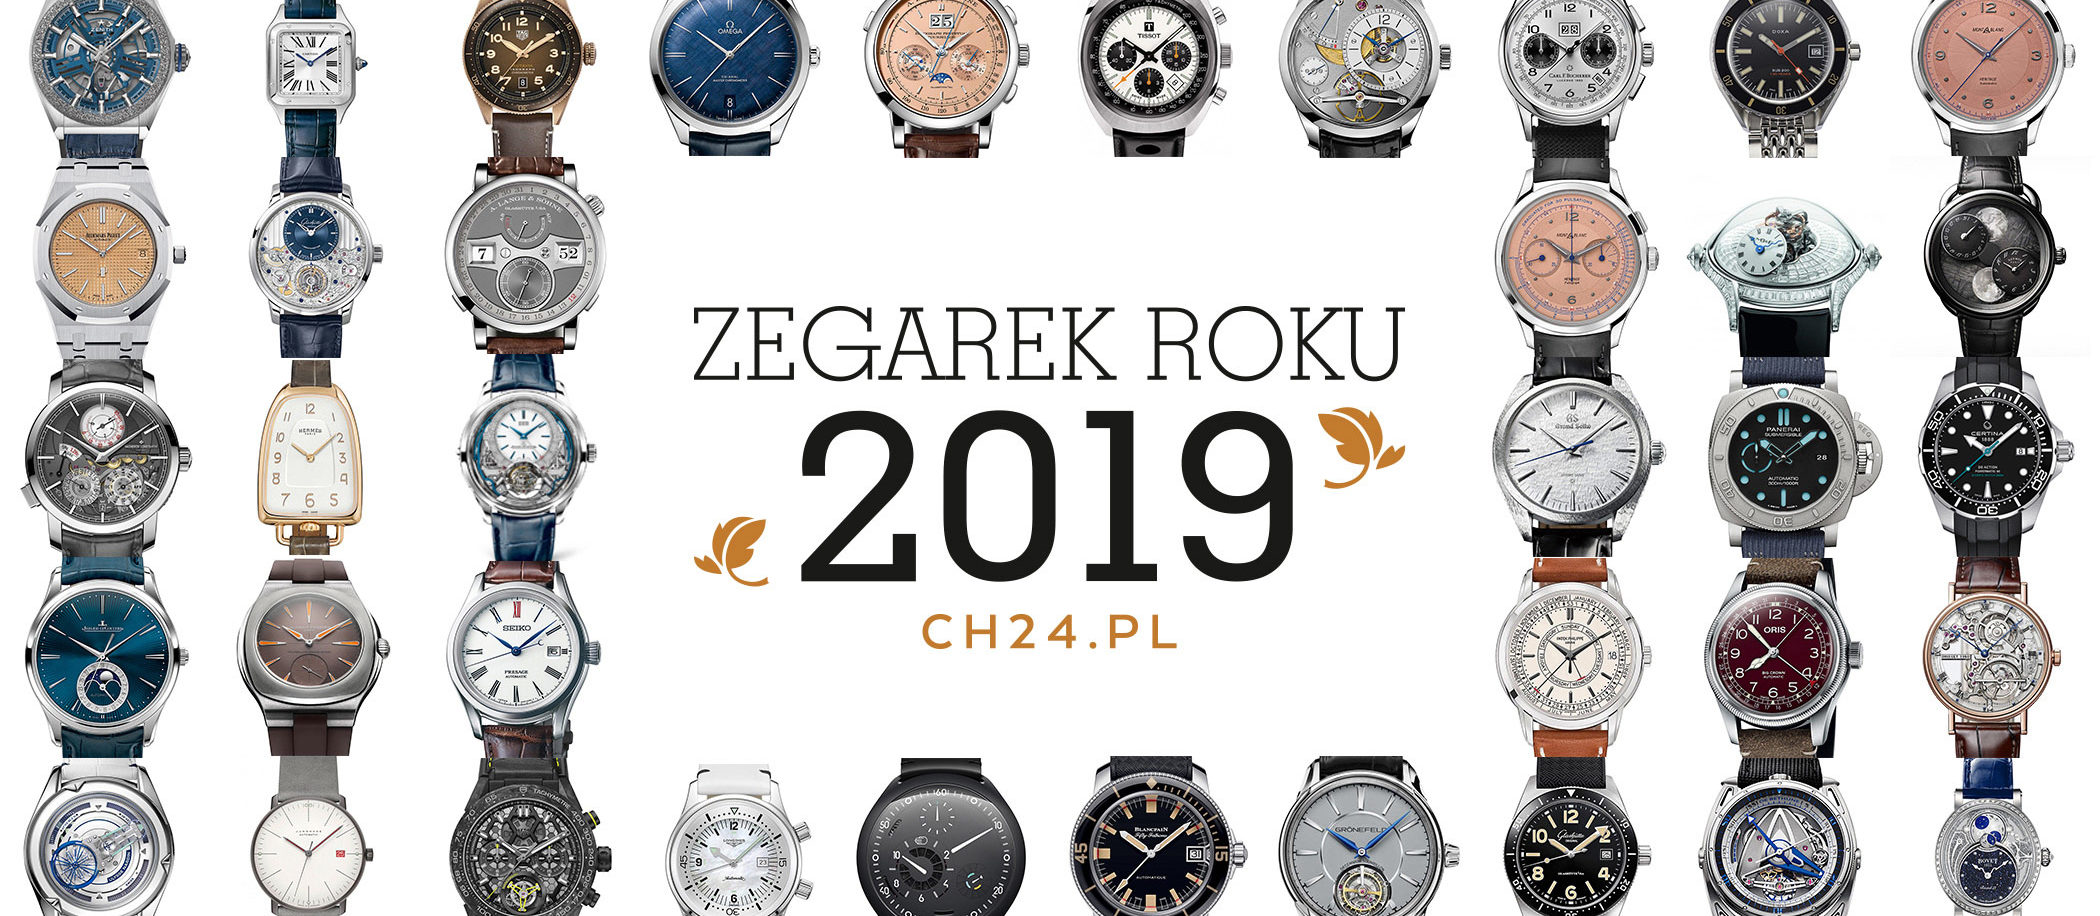 Zegarek Roku 2019